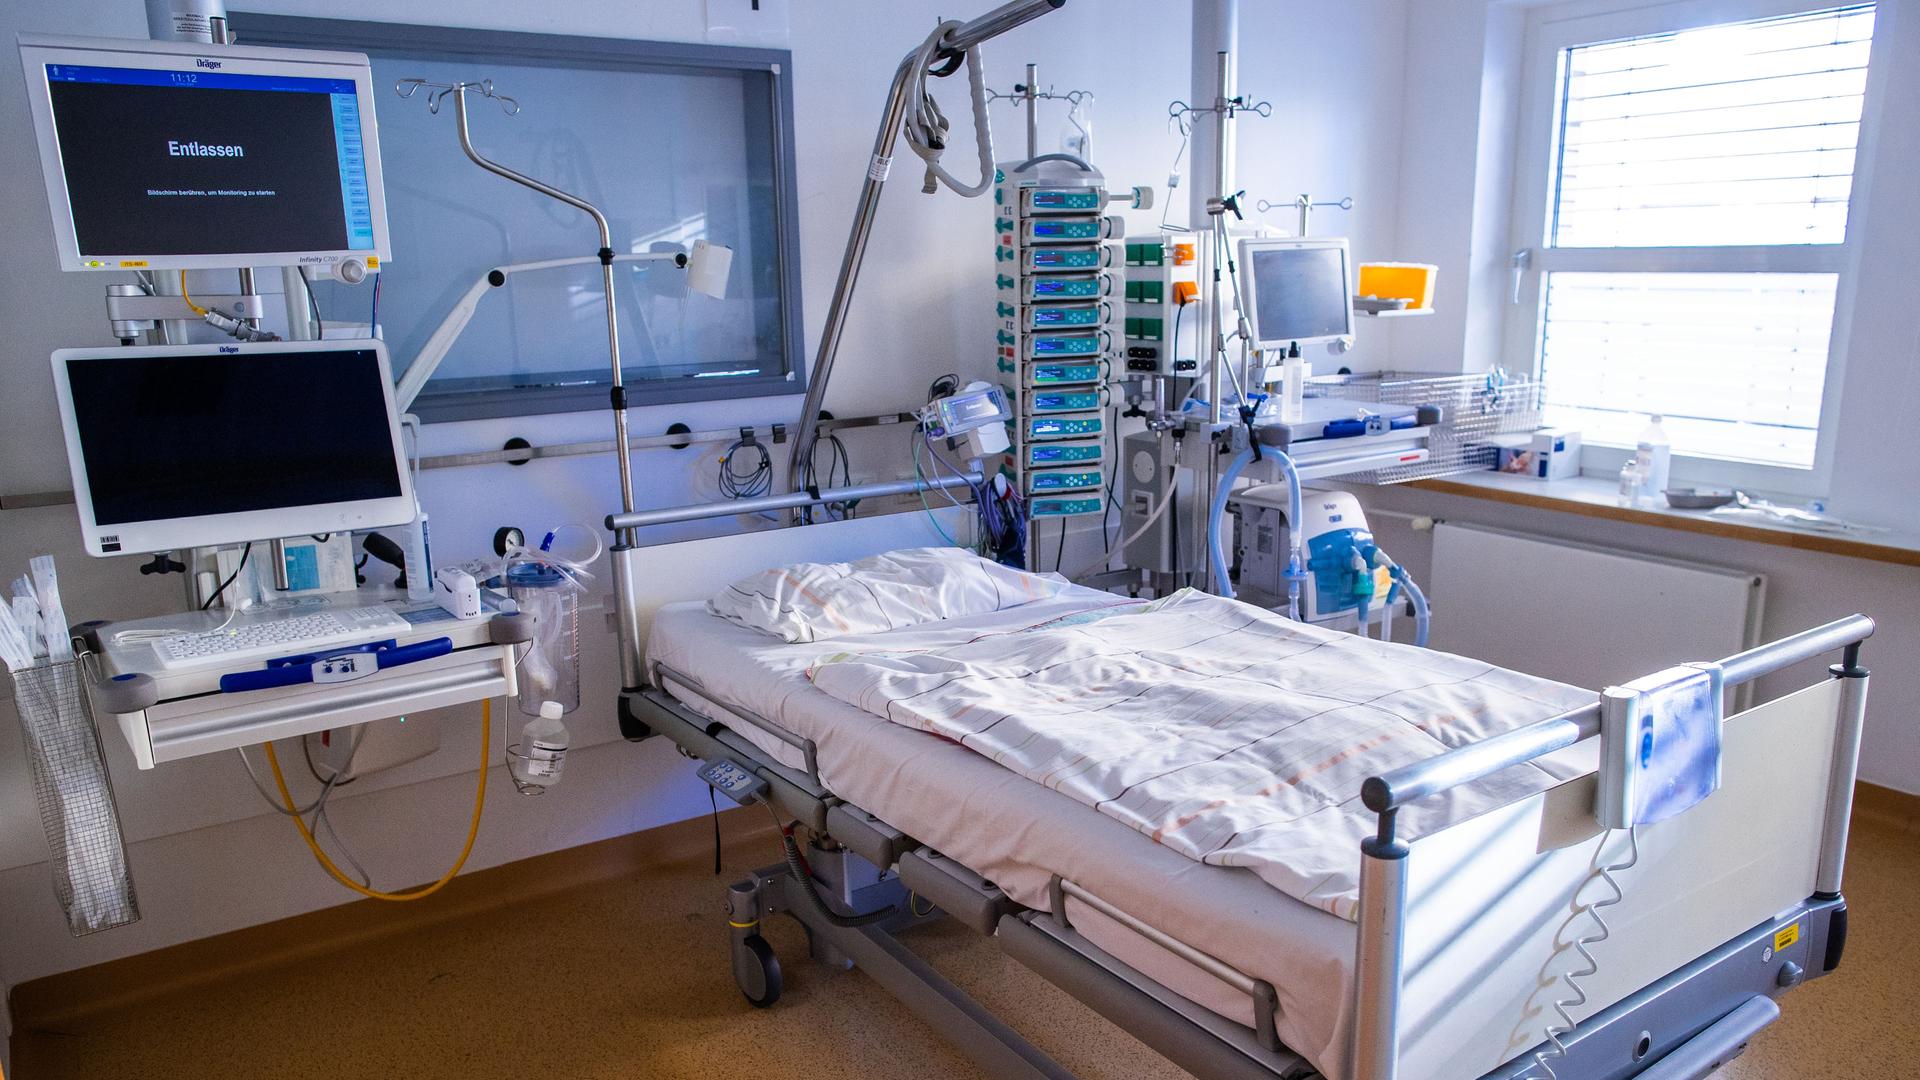 Ein leeres Krankenbett steht in einem Krankenhaus